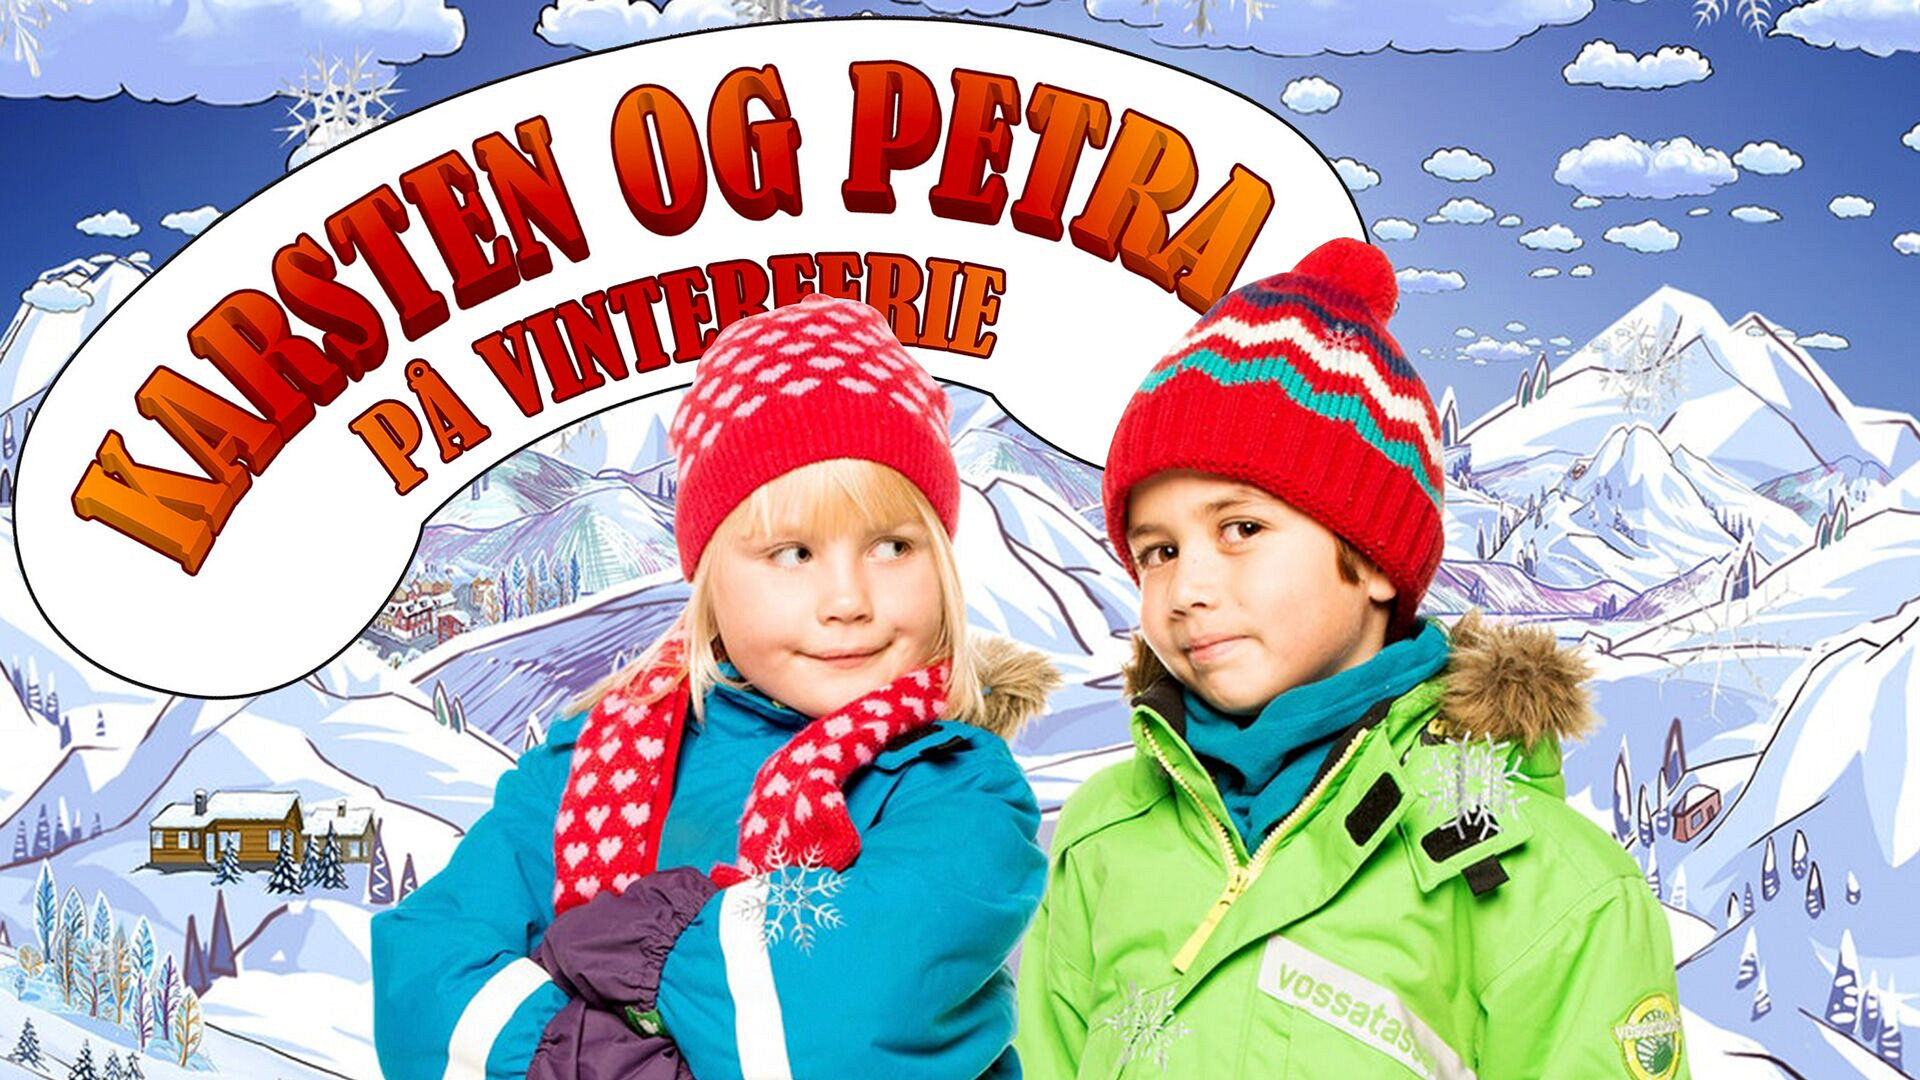 Karsten og Petra på vinterferie (Norsk tale)